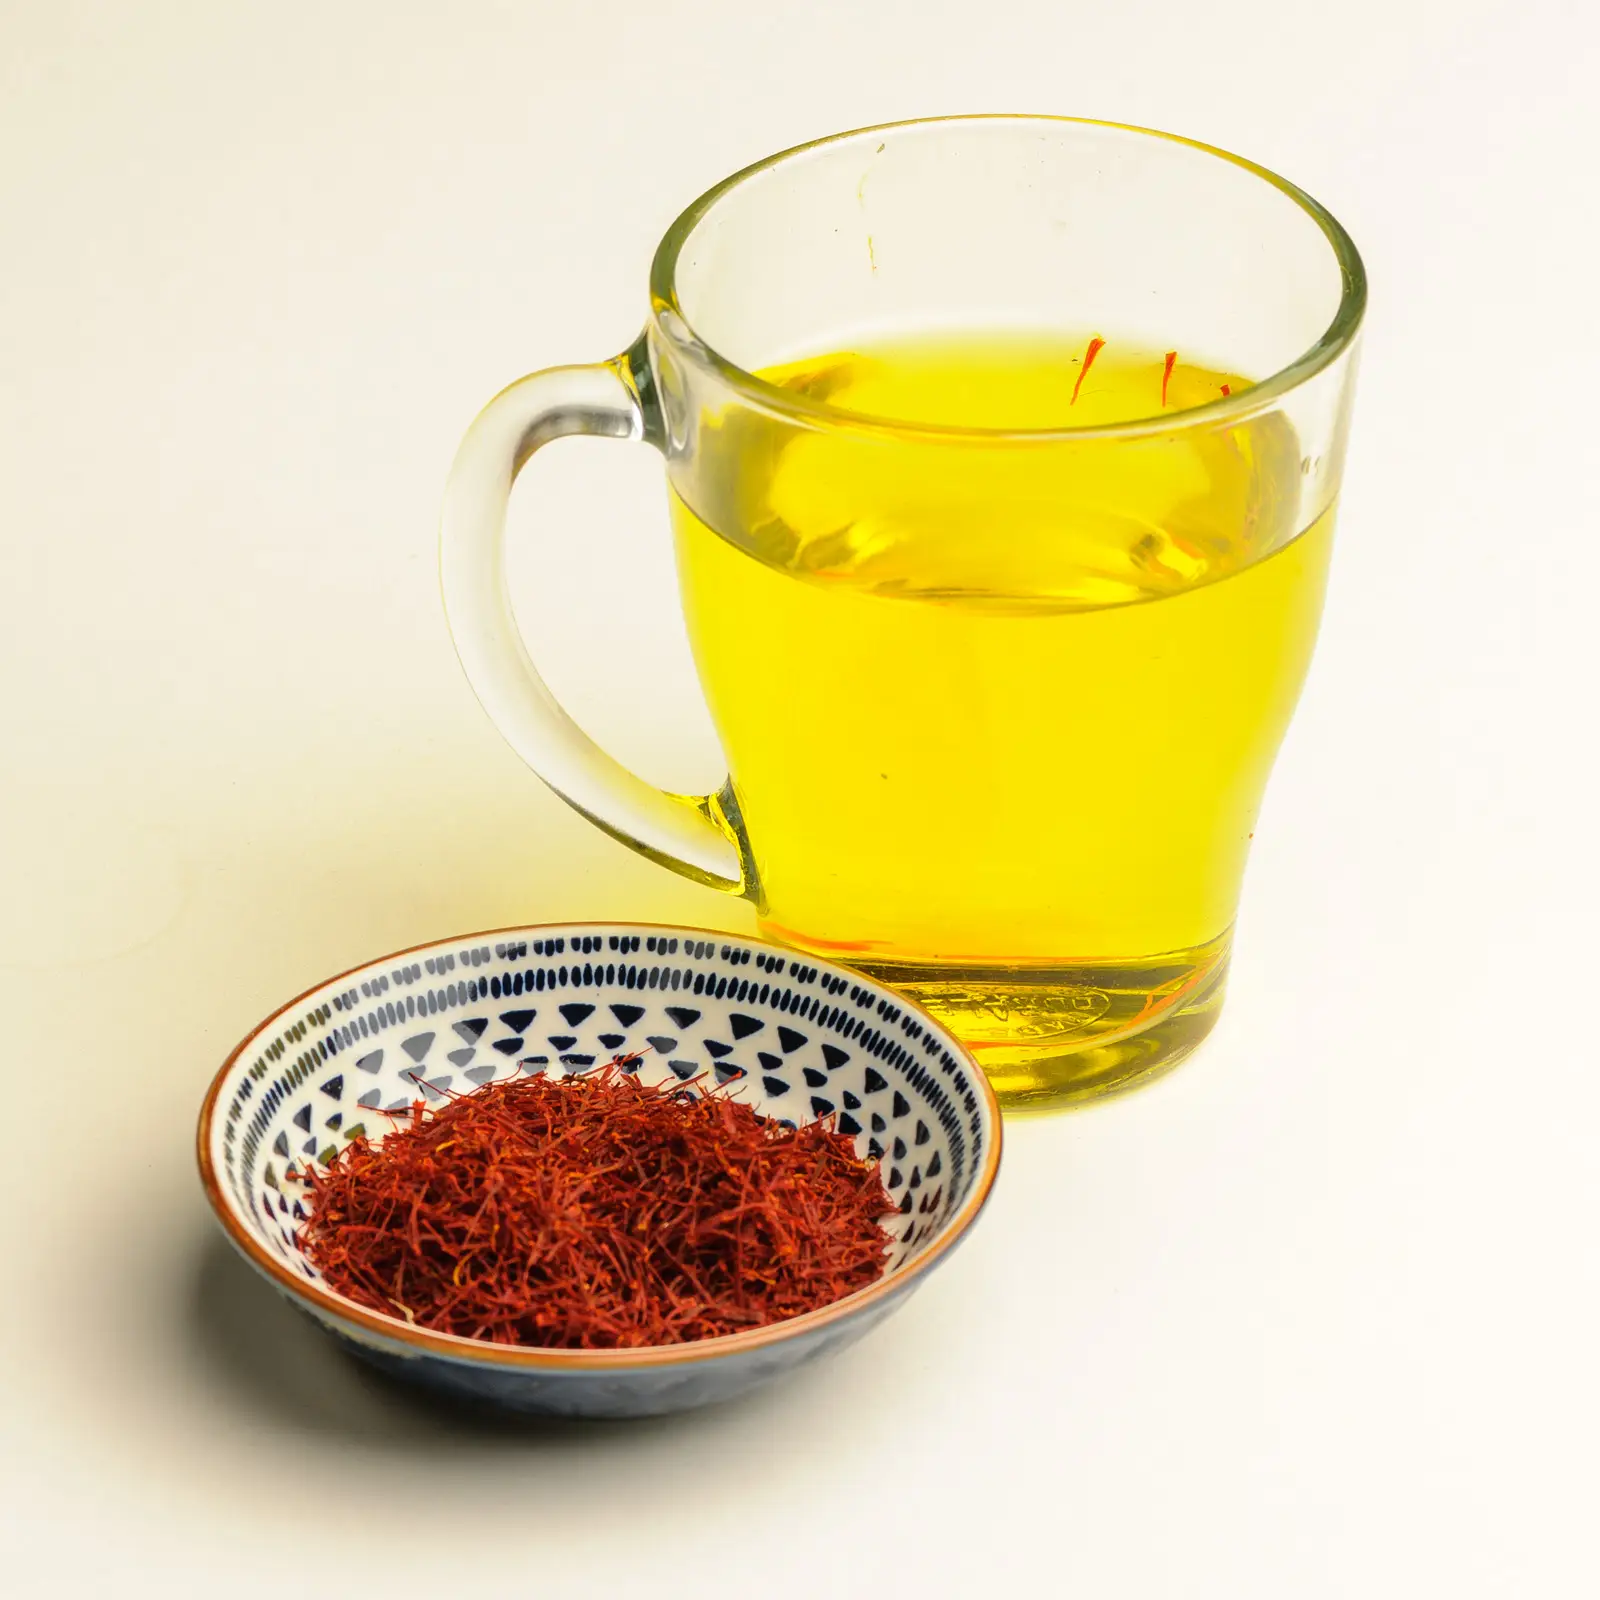 Schaaltje superieure Iraanse saffraan en een theeglas met prachtige lichtgele thee.